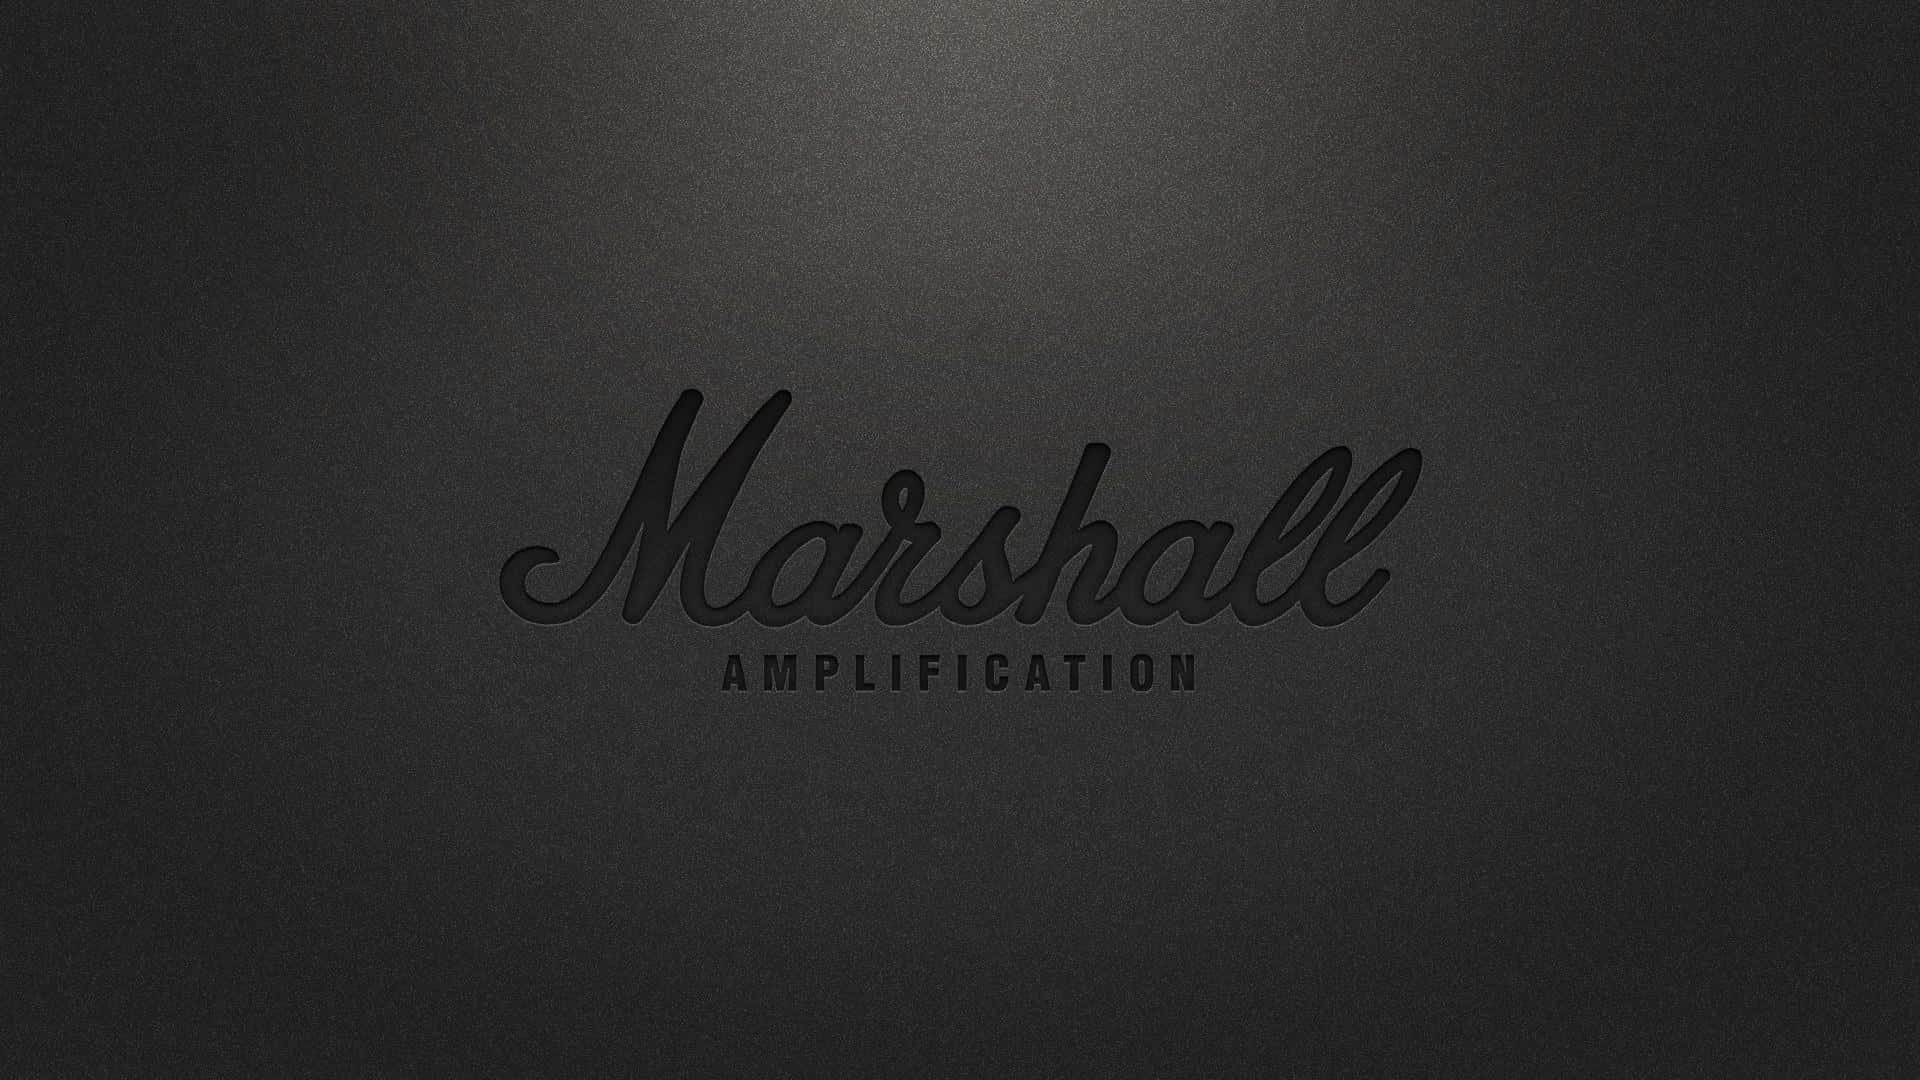 Marshallamplification-logotypen På En Svart Bakgrund.